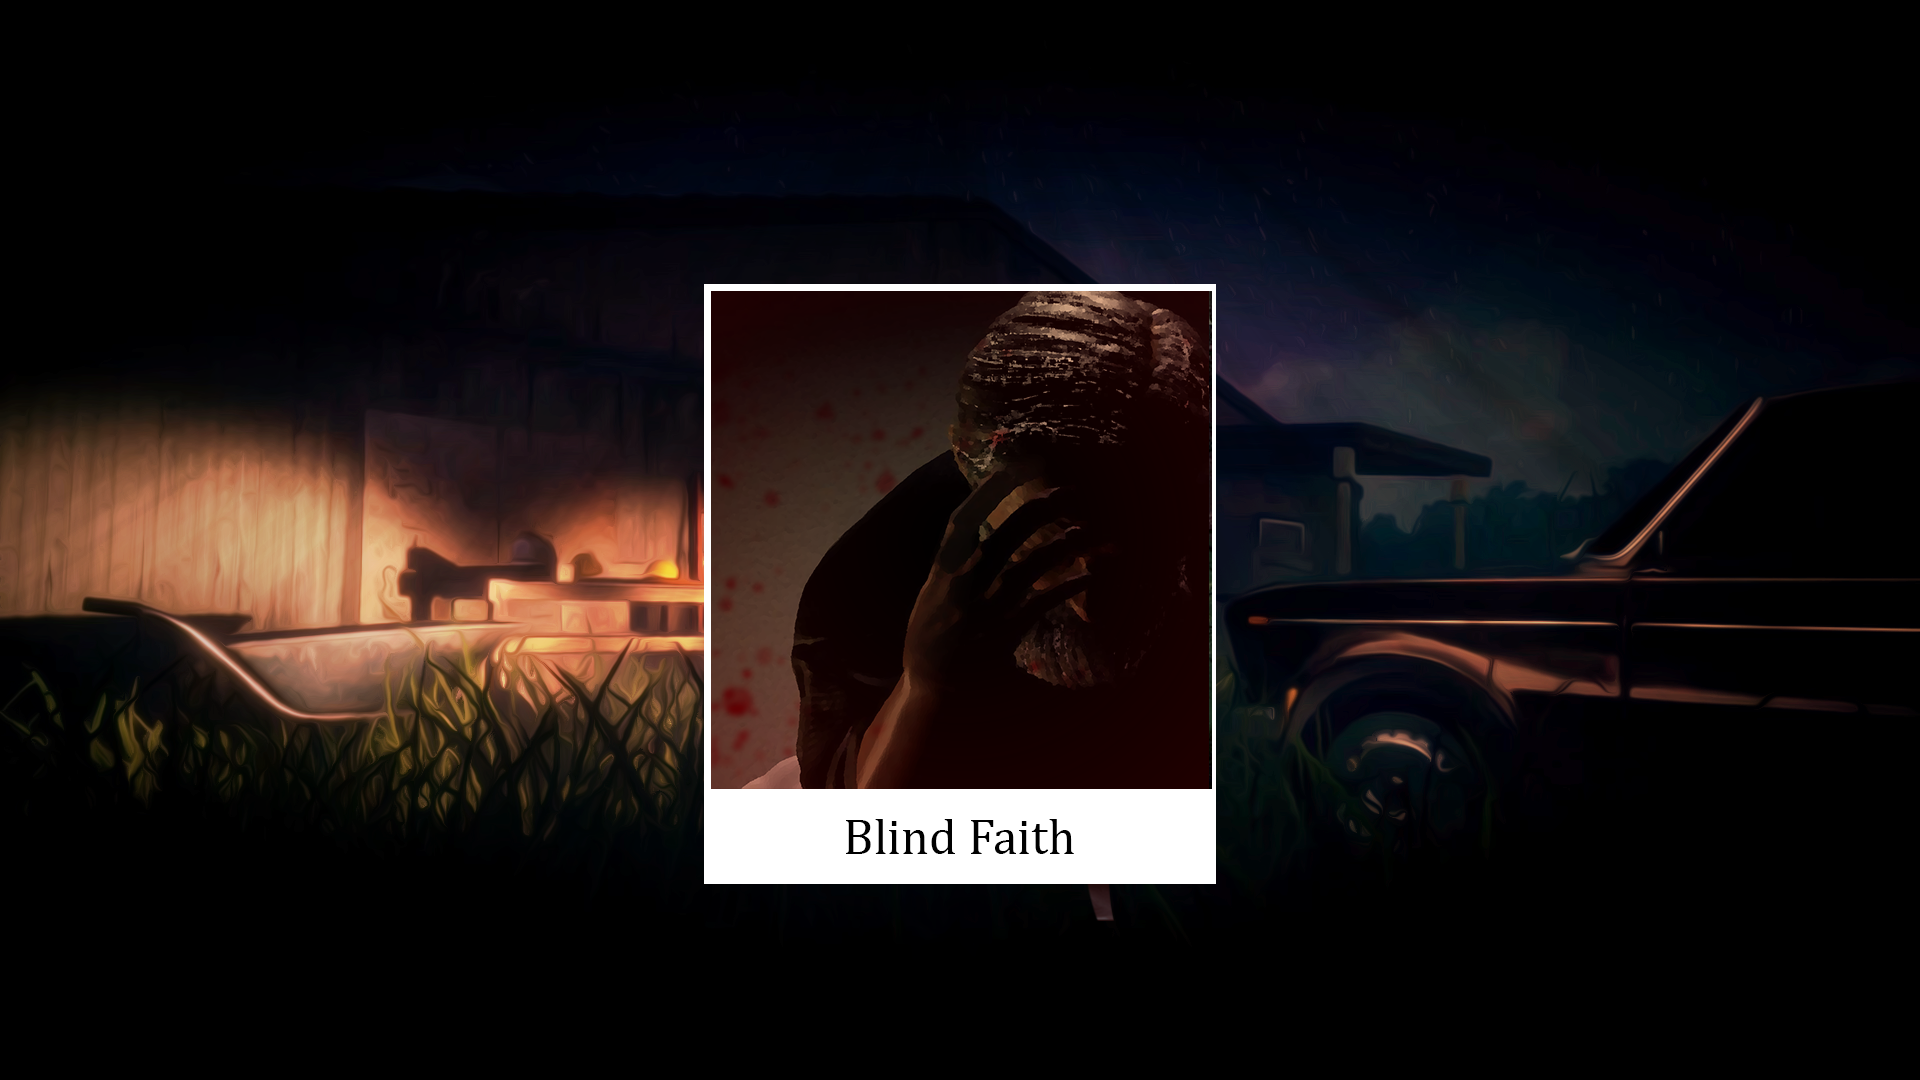 BLIND FAITH